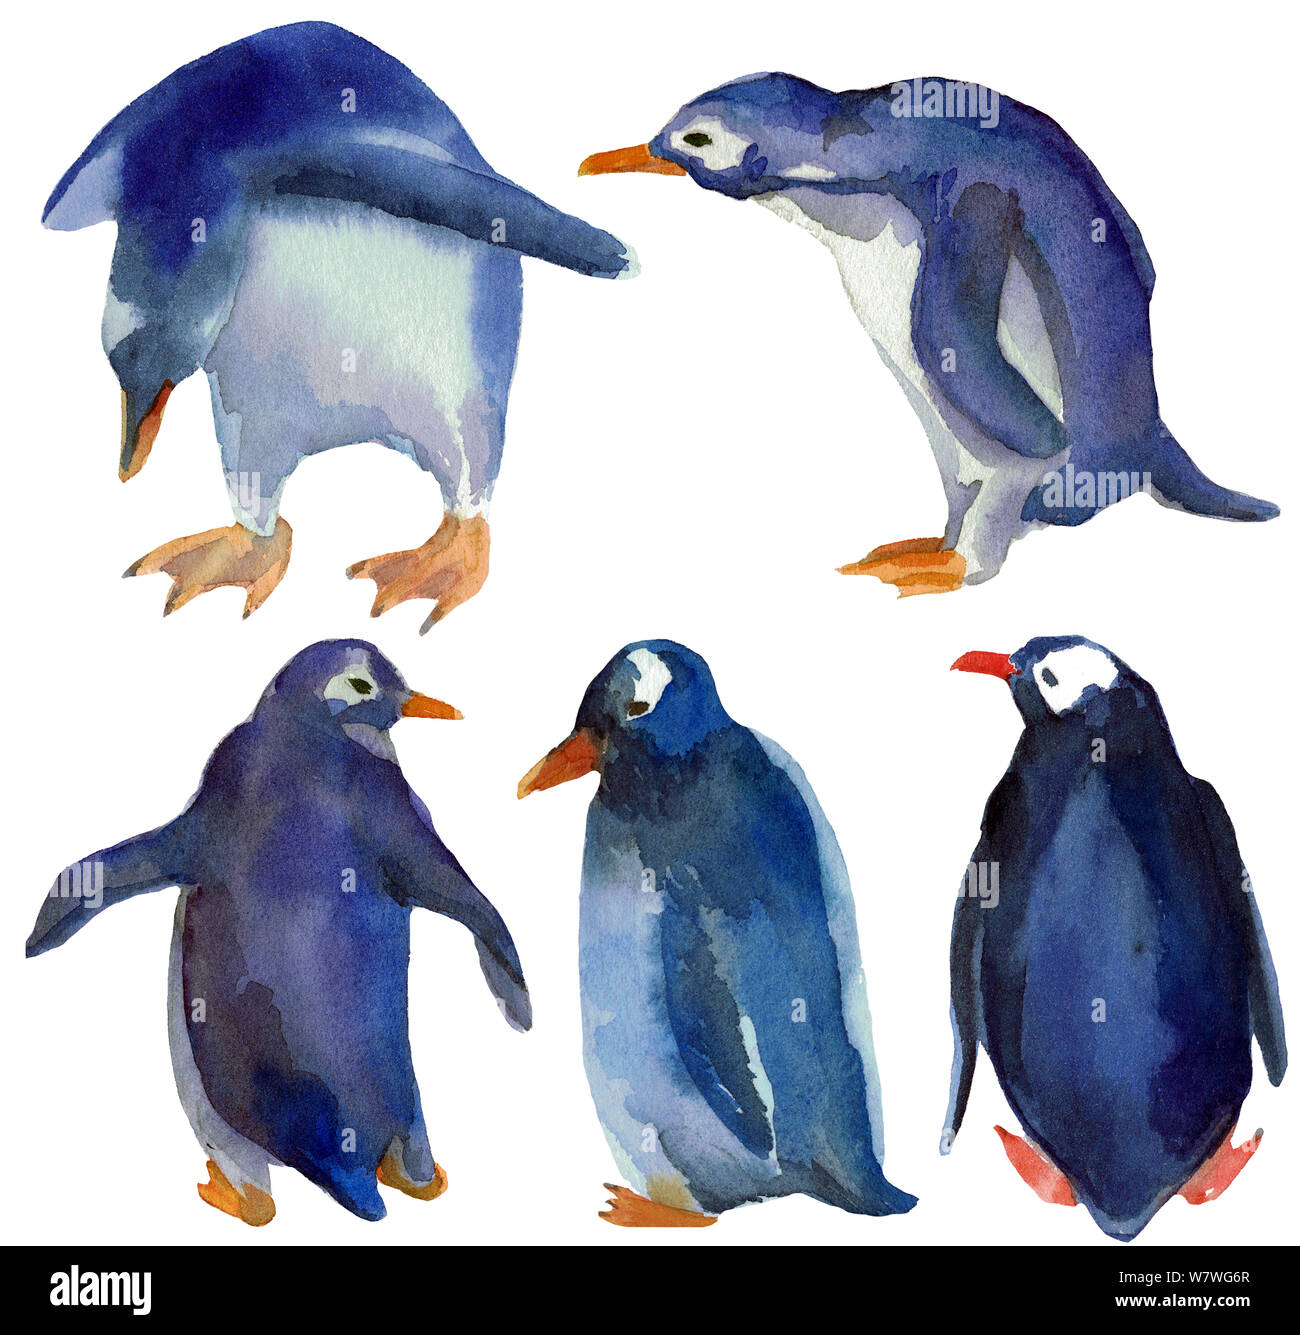 Acquerello disegnata a mano illustrazione di diversi pinguini blu stand in un gruppo, isolato su sfondo bianco. Design per bambini illustrazione. Foto Stock